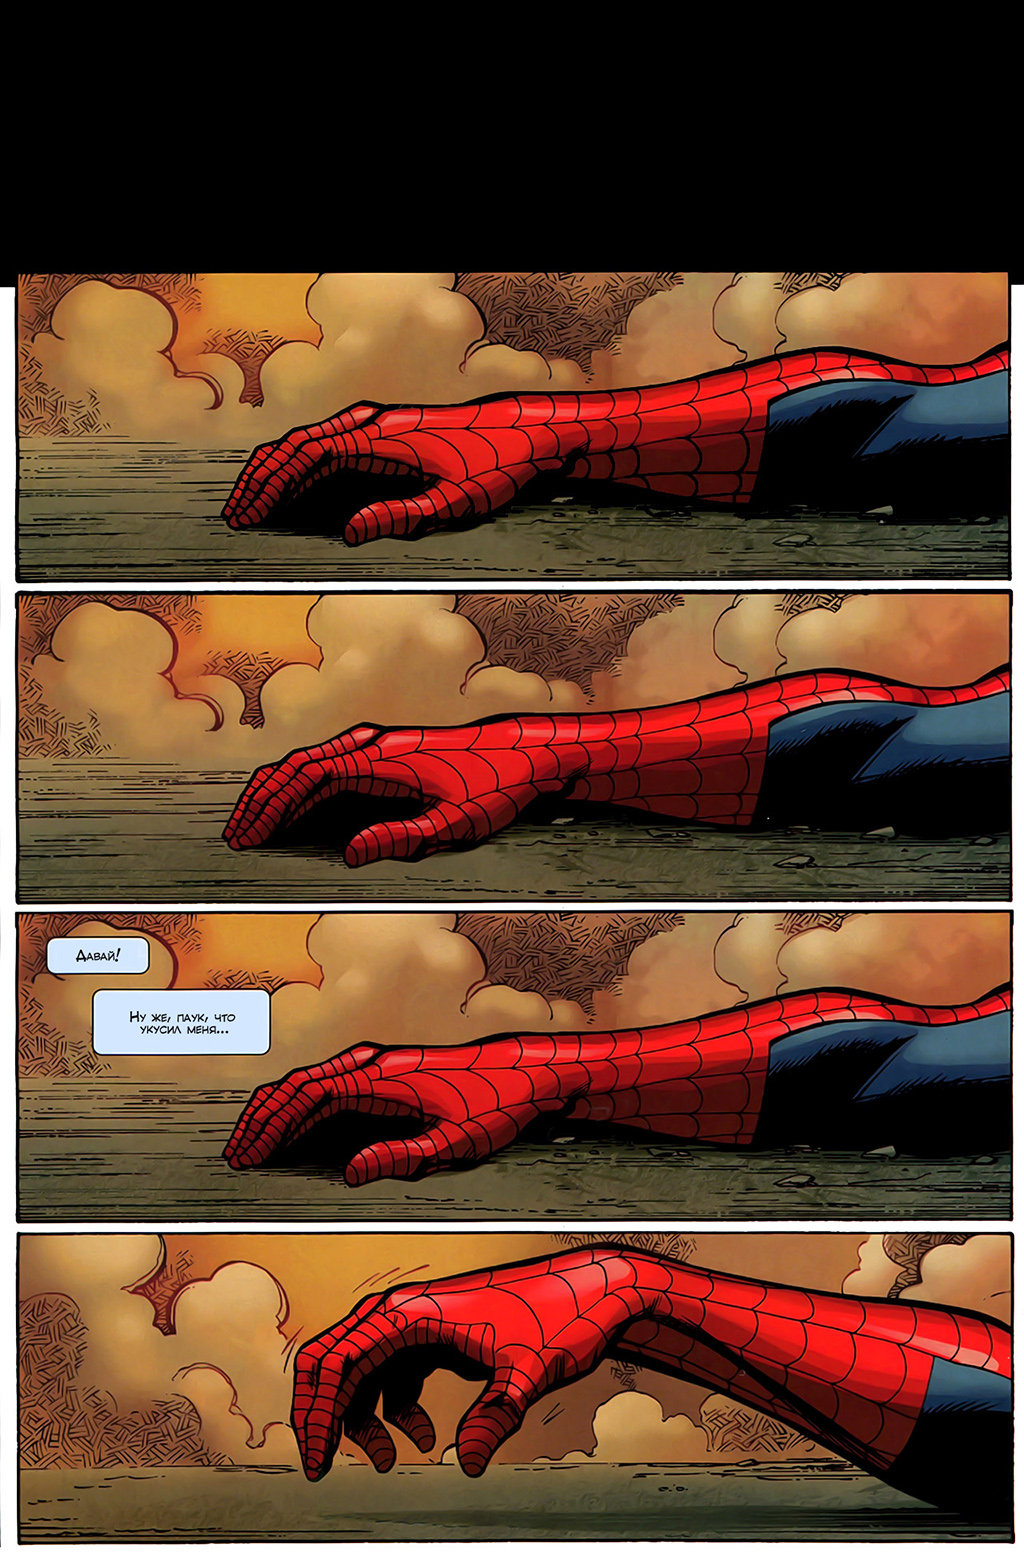 Ultimate Spider-man Питер Паркер смерть. Питер Паркер в комиксах укус паука. Комиксы человек паук ультимейт смерть. Ultimate Spider man грустный комикс.